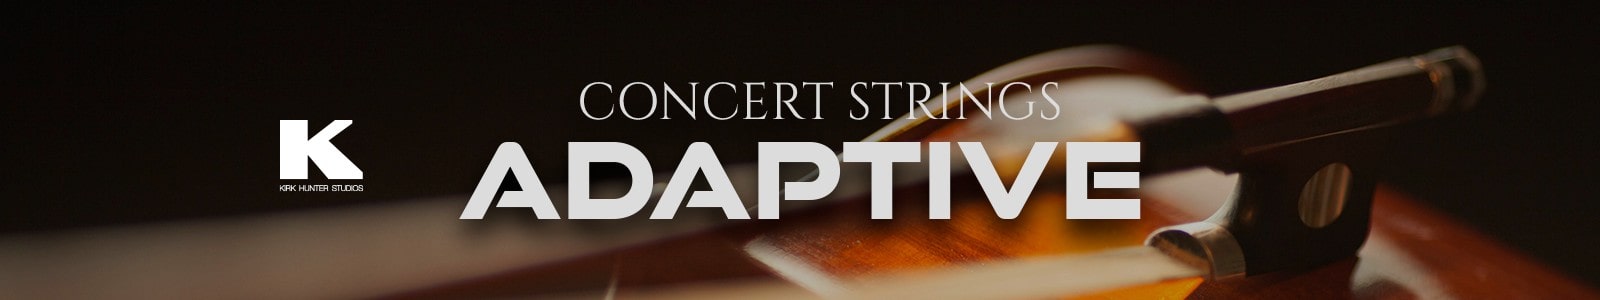 Kirk Hunter Studios Concert Strings Adaptive